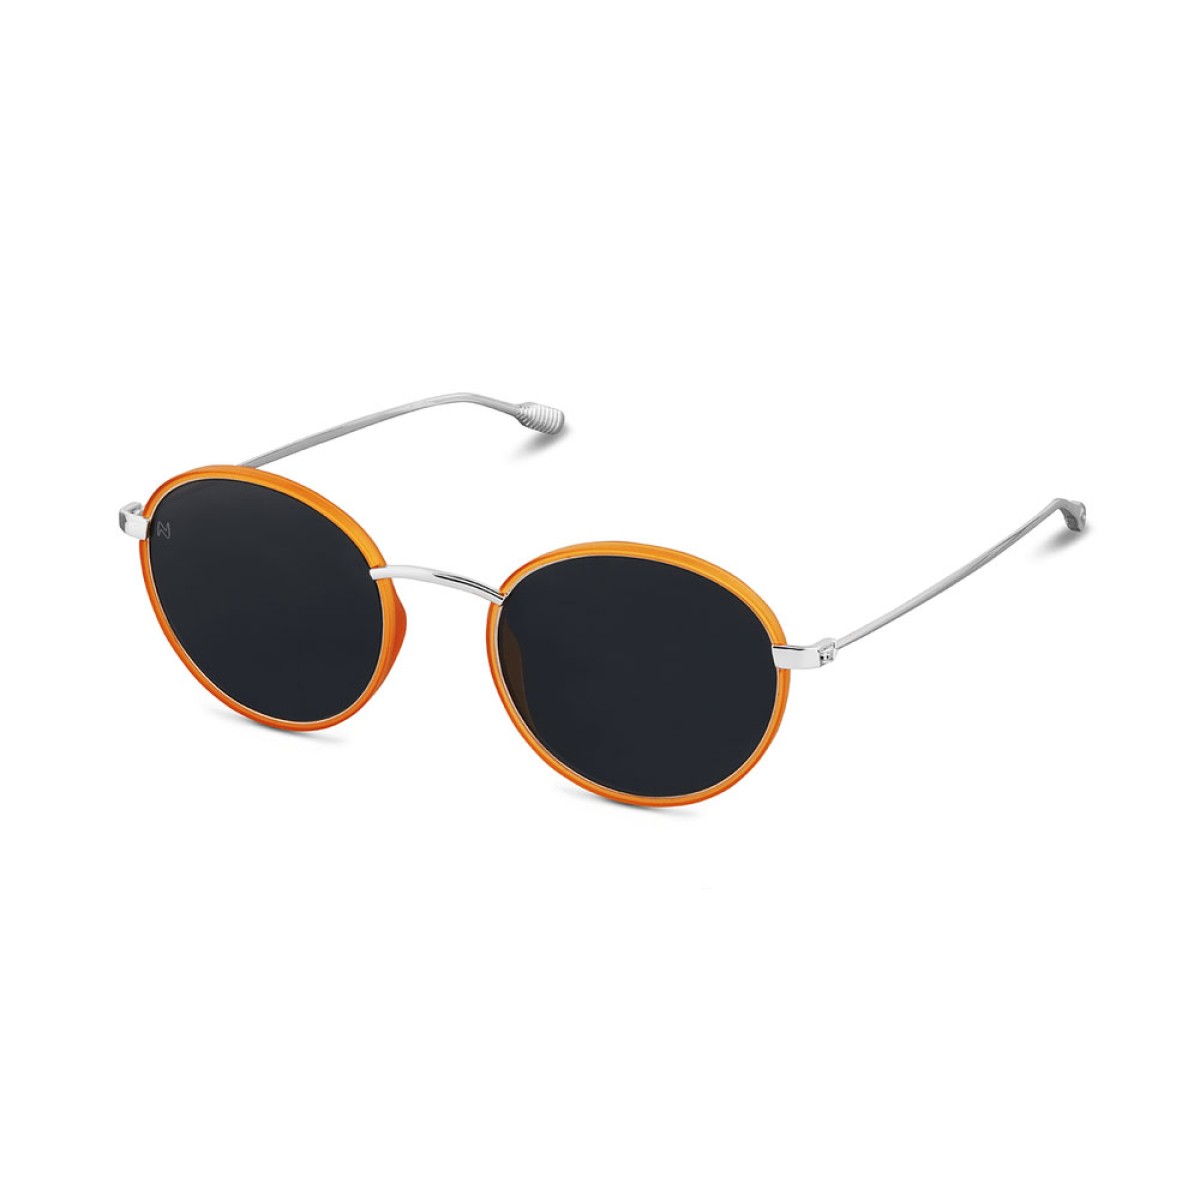 Nooz - Dual Sunglasses - Ela - Honey